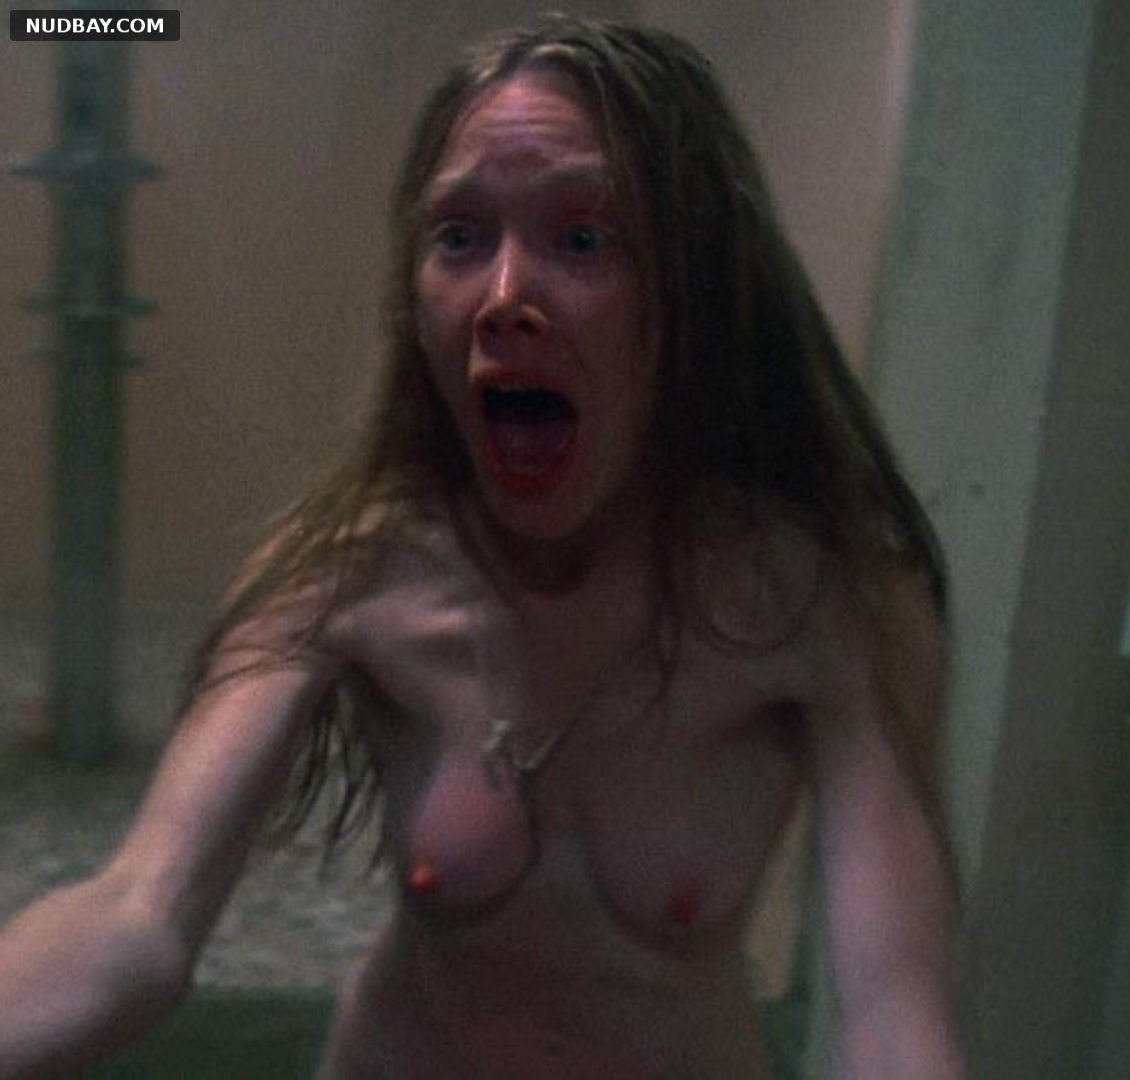 Sissy Spacek nude in Carrie (1976)